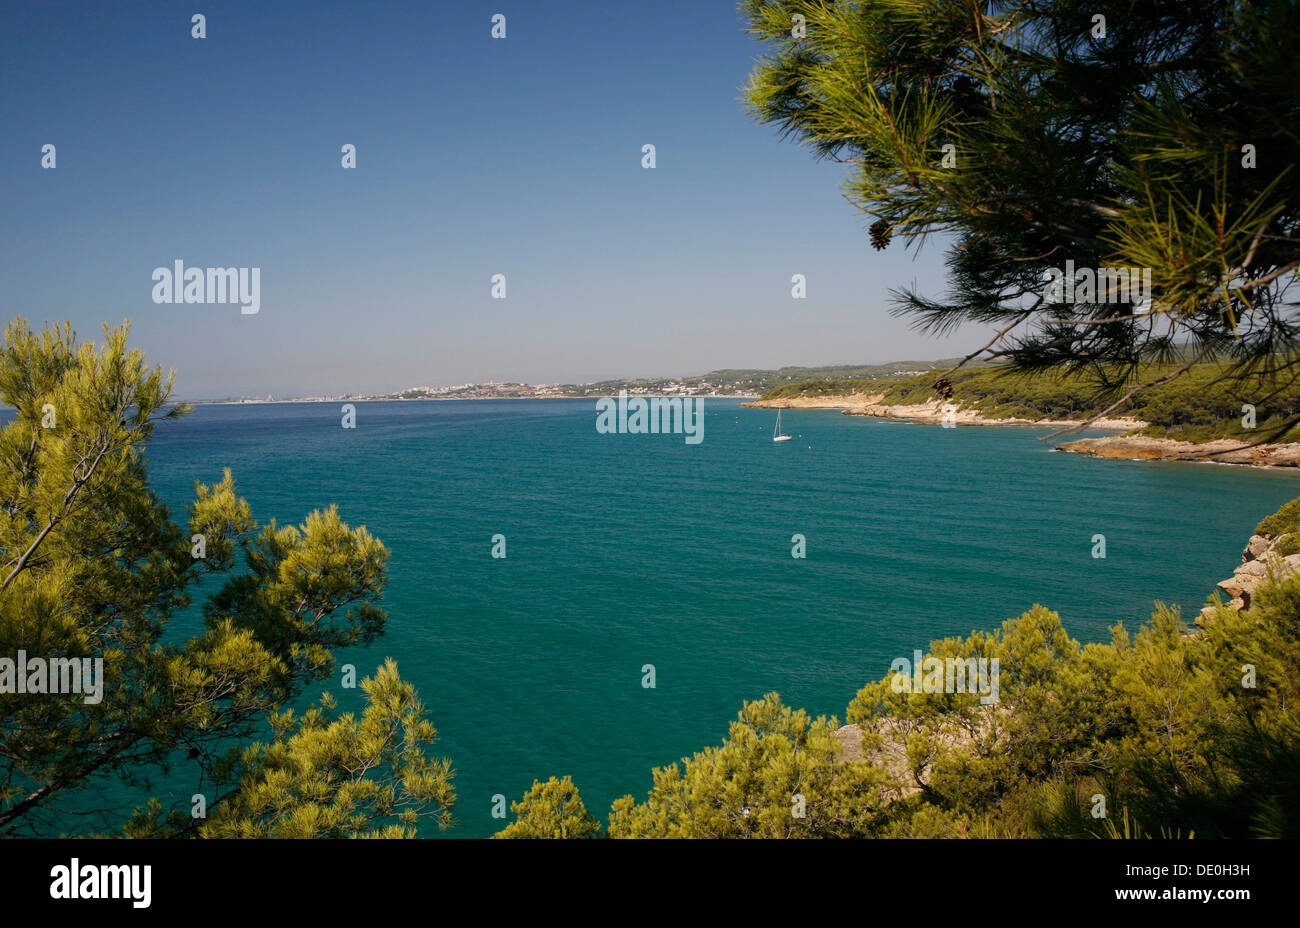 Mediterranean coast near Tarragona, Mediterranean Sea, Catalonia, Spain, Europe Stock Photo